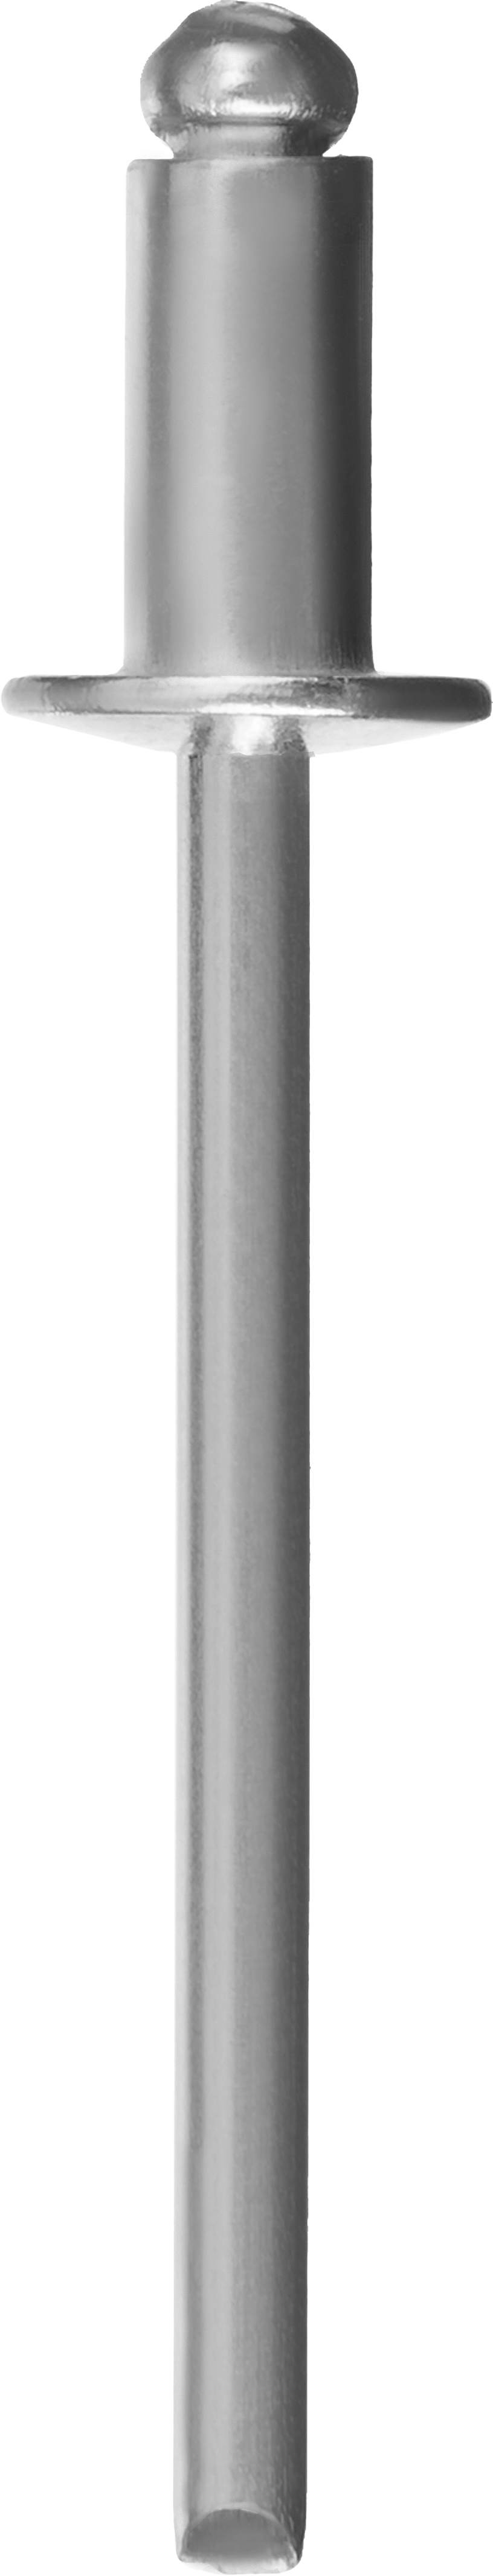 Заклепки вытяжные Зубр Профессионал, ⌀ 6.4 мм длина гильзы 15 мм, алюминий, 250 шт. (31310-64-15)